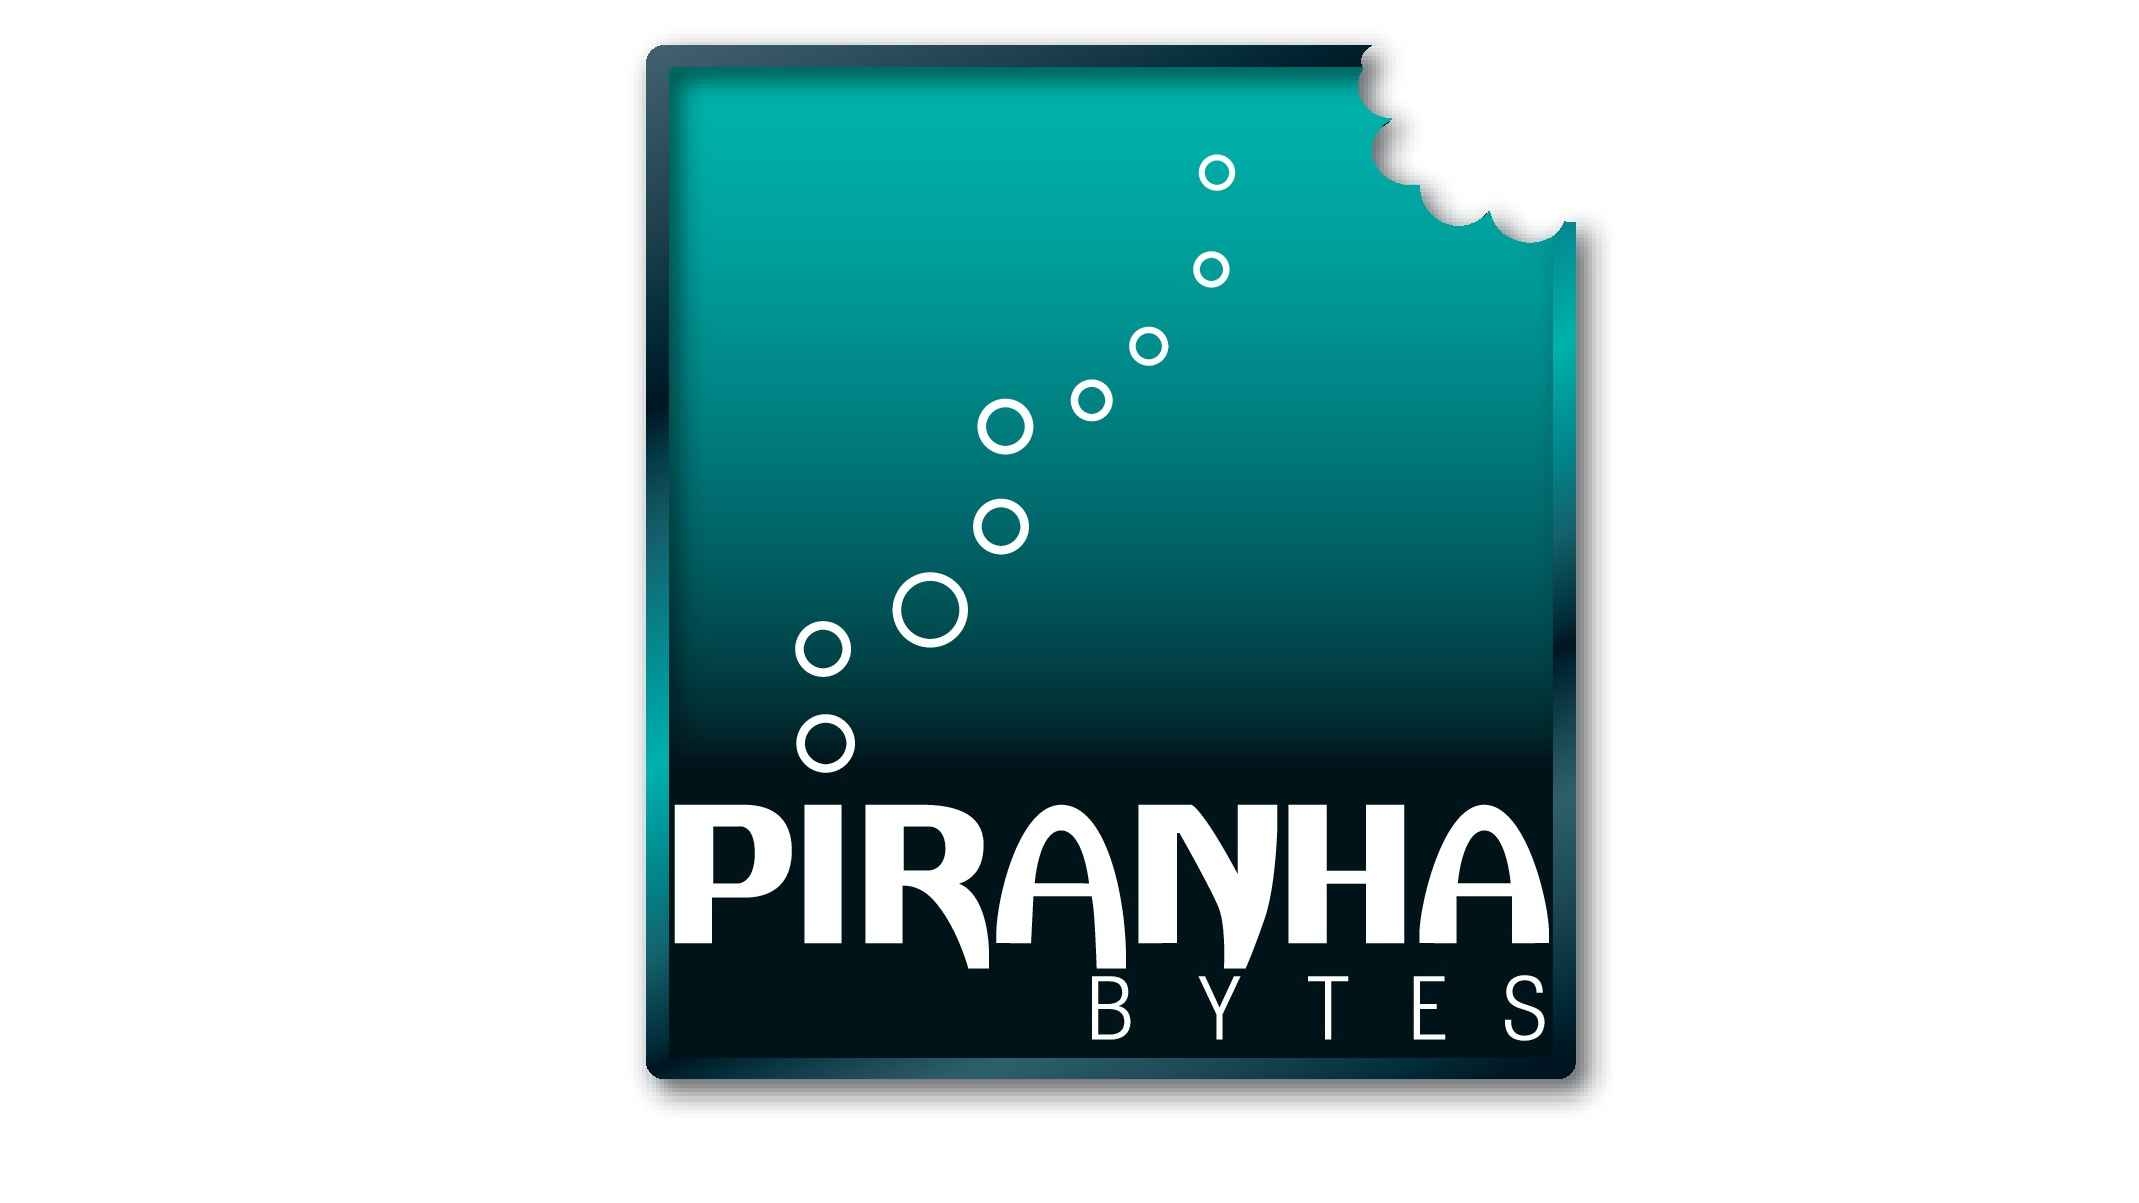 Piranha Bytes bestätigt "schwierige Lage" und gibt sich kämpferisch 